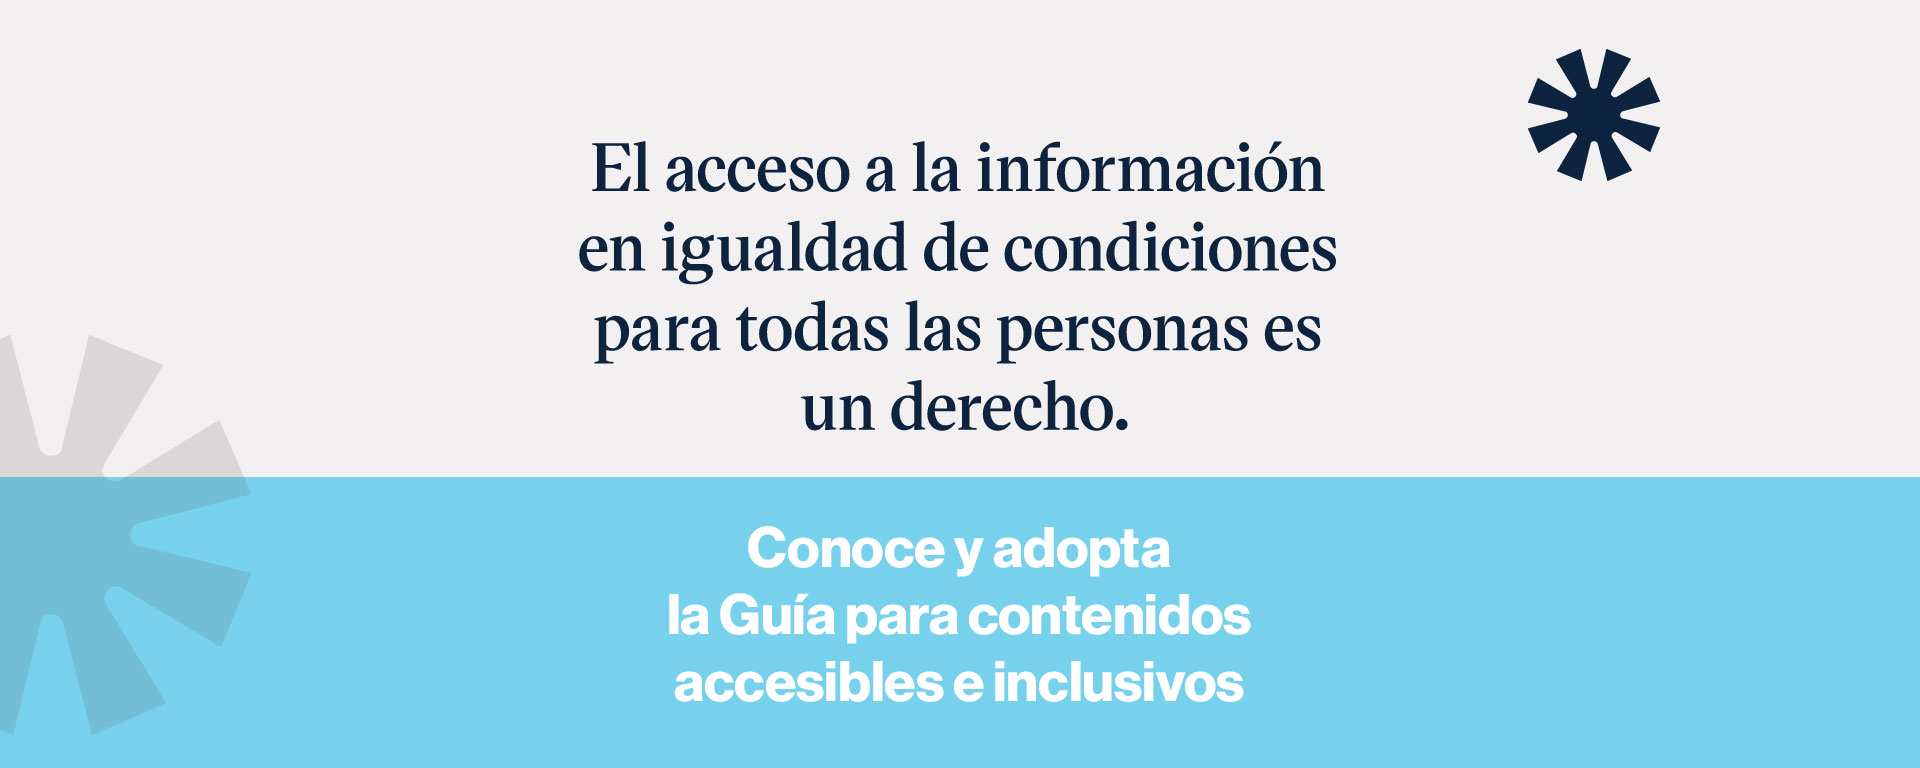 Guía de contenidos accesibles e inclusivos del Centro de Reconocimiento de la Dignidad Humana del Tec de Monterrey